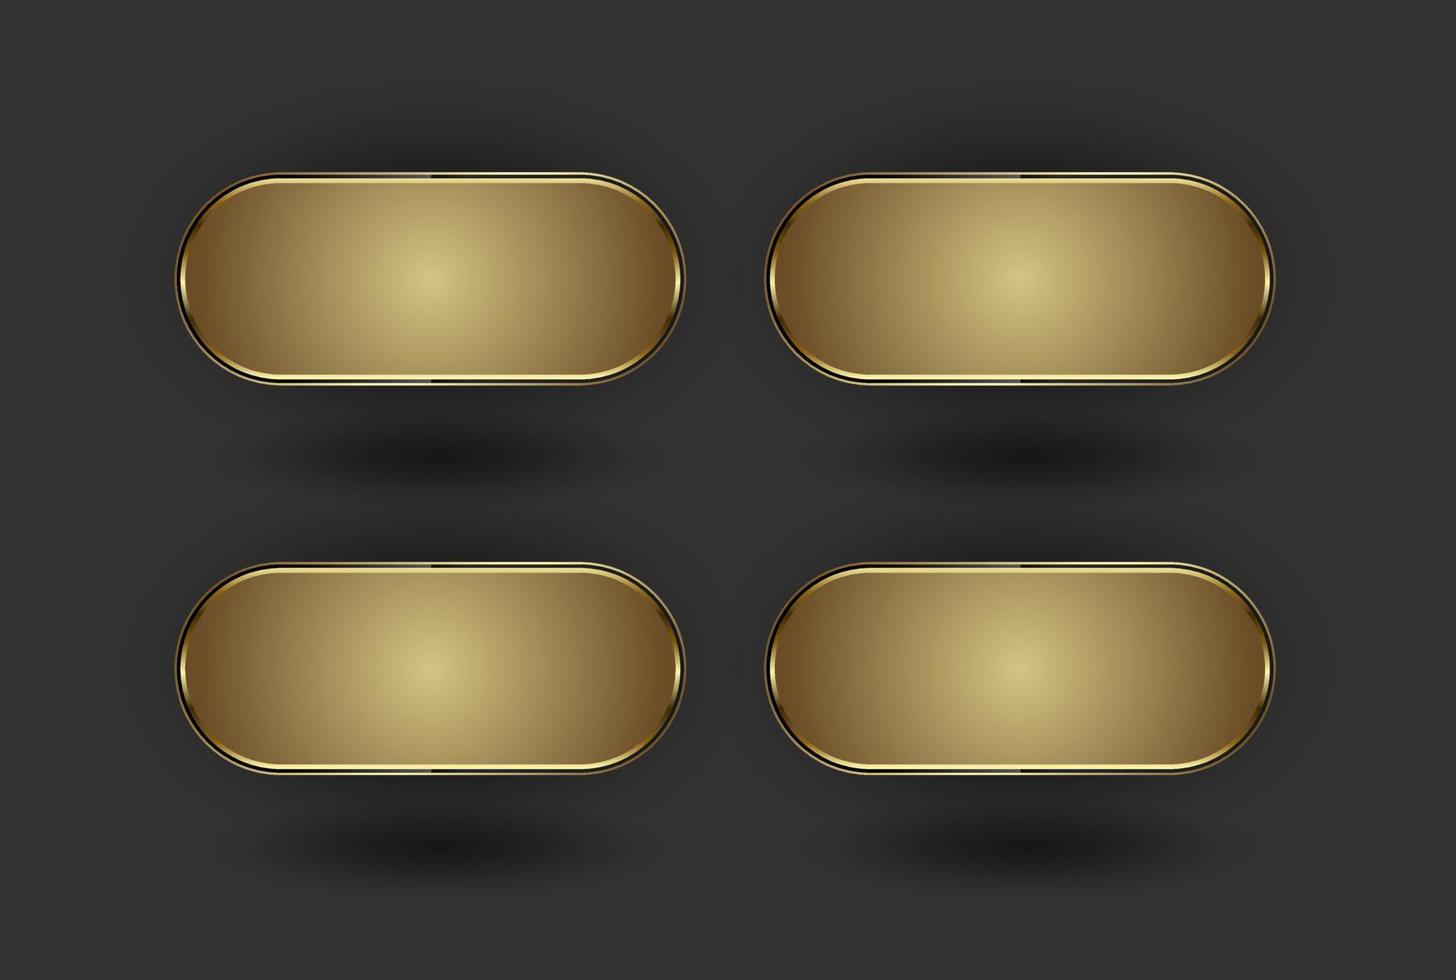 ensemble de 4 boutons dorés, quatre formes premium de style géométrique avec des cadres de luxe et une forme dorée sur illustration vectorielle effet fond sombre. vecteur